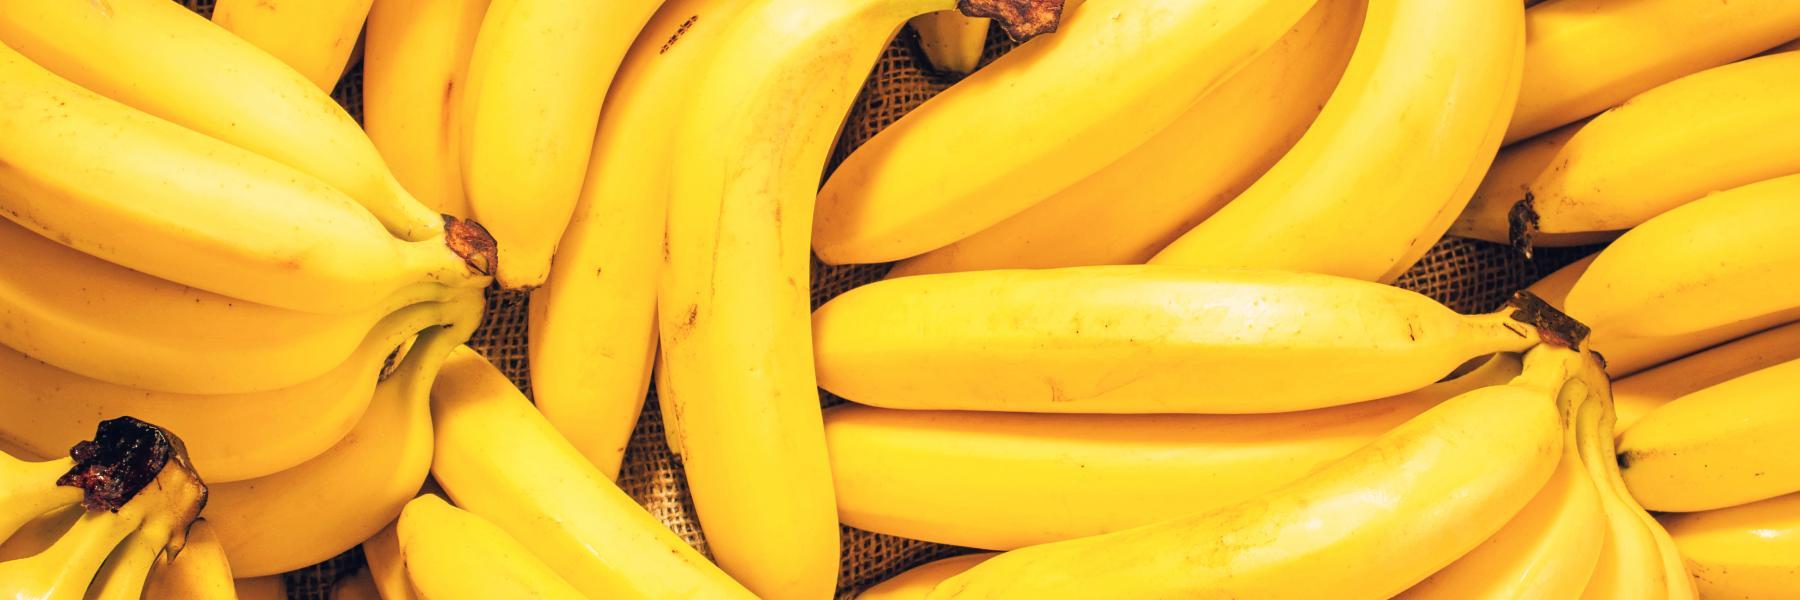 اكتشفي الفوائد الصحية لتناول الموز